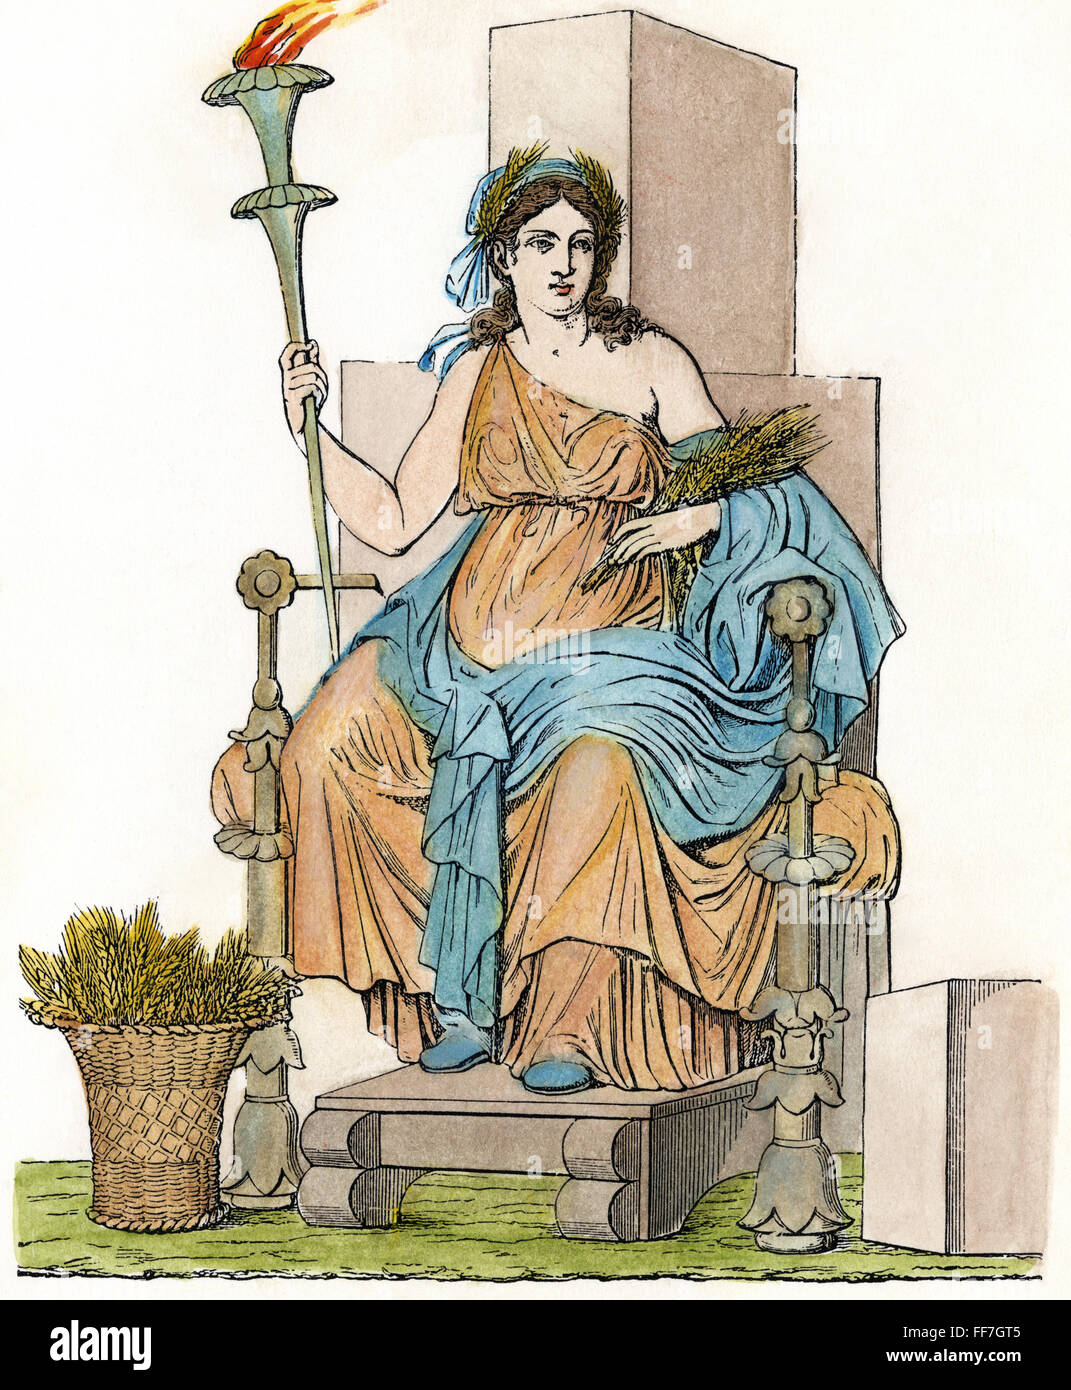 DEMETER/CERES. /nThe griechische Göttin (römische Göttin Ceres) des Wachstums von Nahrungspflanzen, thront mit ihrem Attribut des Weizens. /nLine Stich nach einer Wandmalerei in Pompeji, Italien, 19. Jahrhundert. Stockfoto